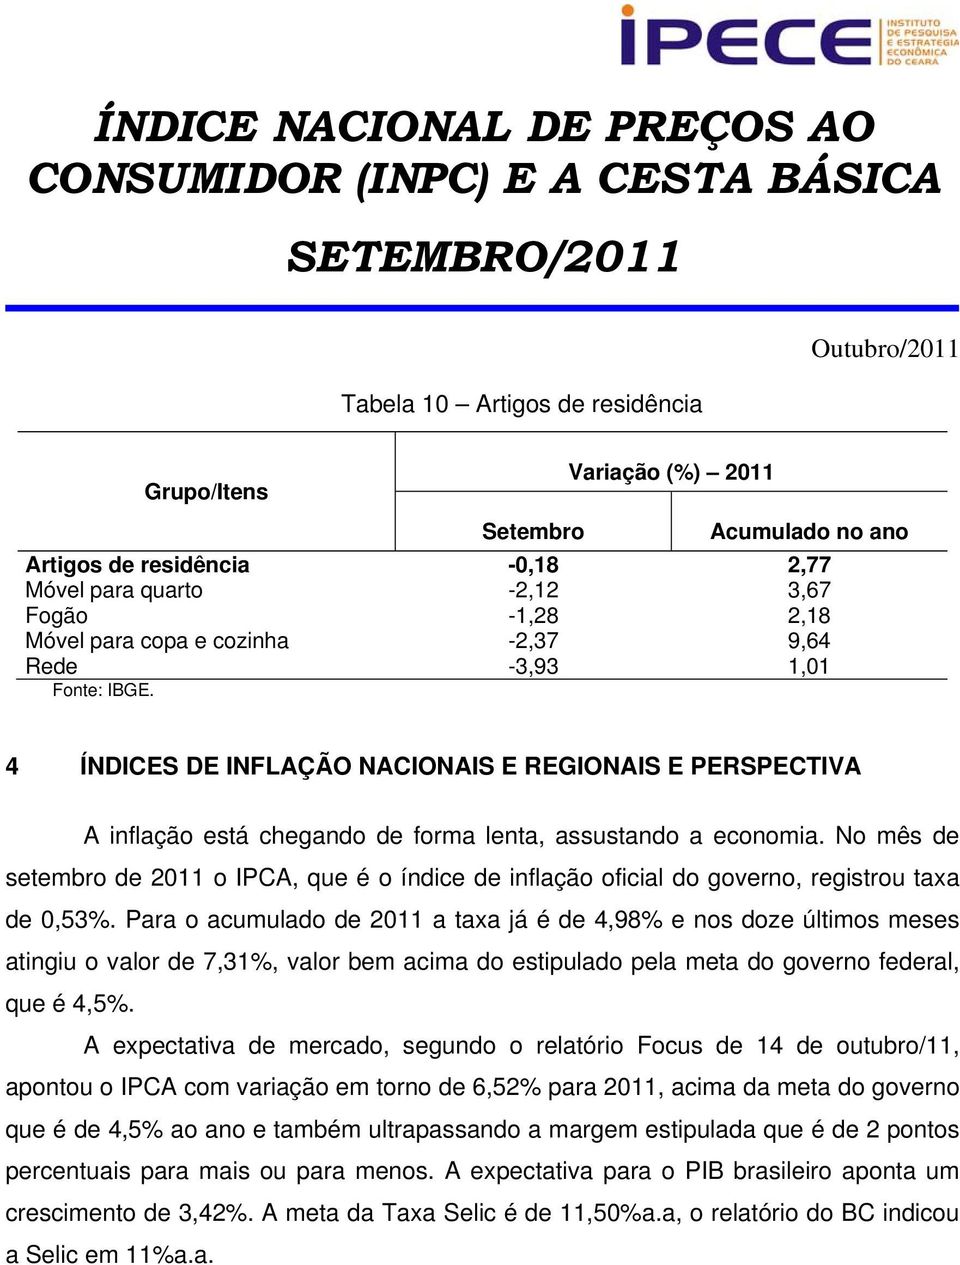 No mês de setembro de 2011 o IPCA, que é o índice de inflação oficial do governo, registrou taxa de 0,53%.